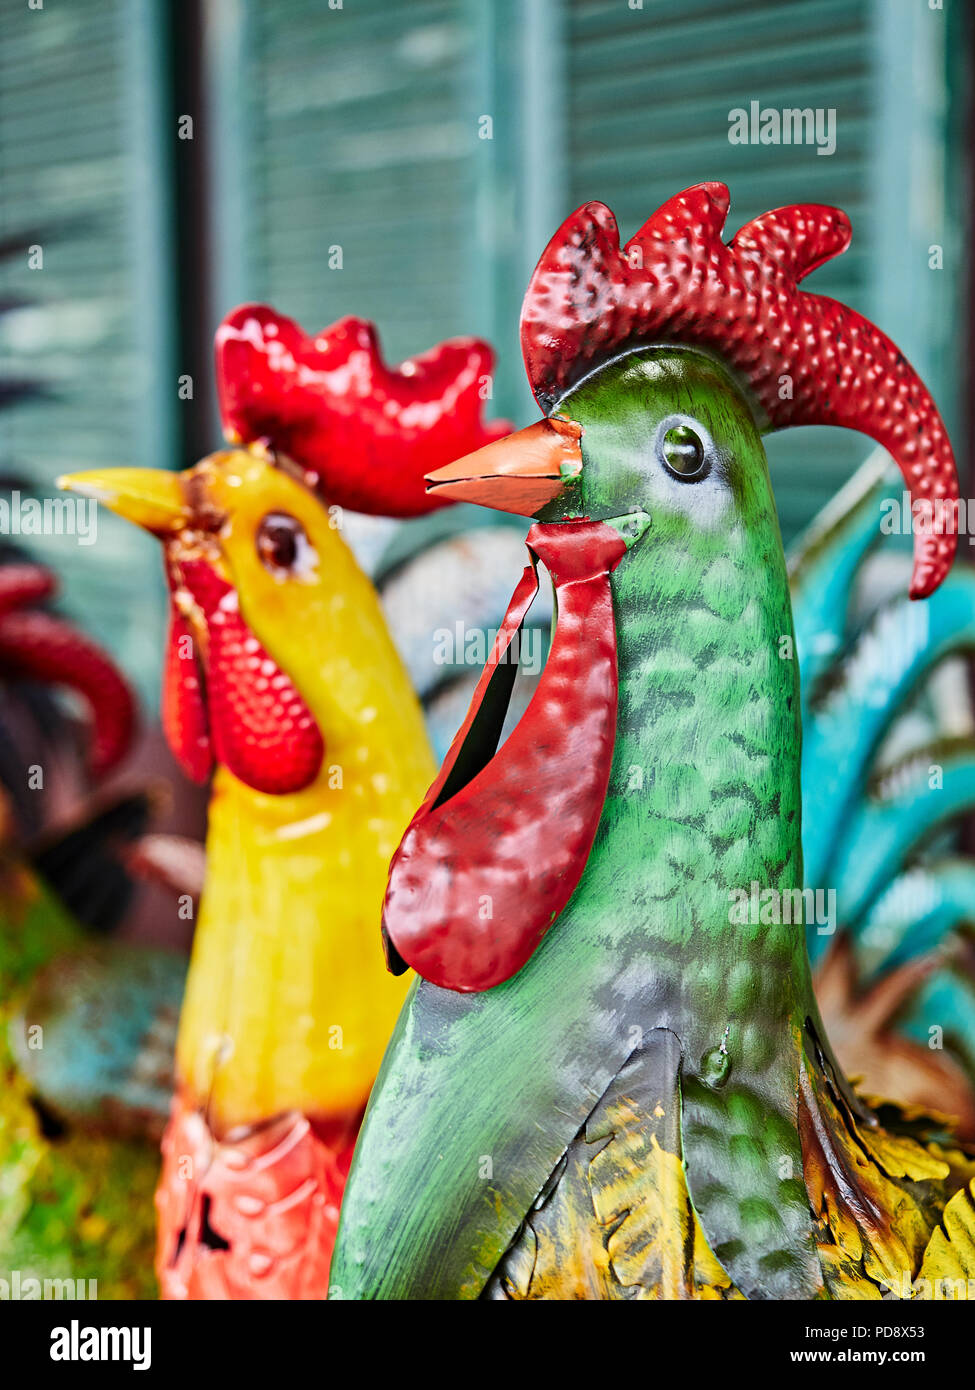 Metal art jardín o patio de granja colorida decoración de gallos para la venta en un mercado de agricultores en la carretera carretera Pike en Alabama, Estados Unidos. Foto de stock